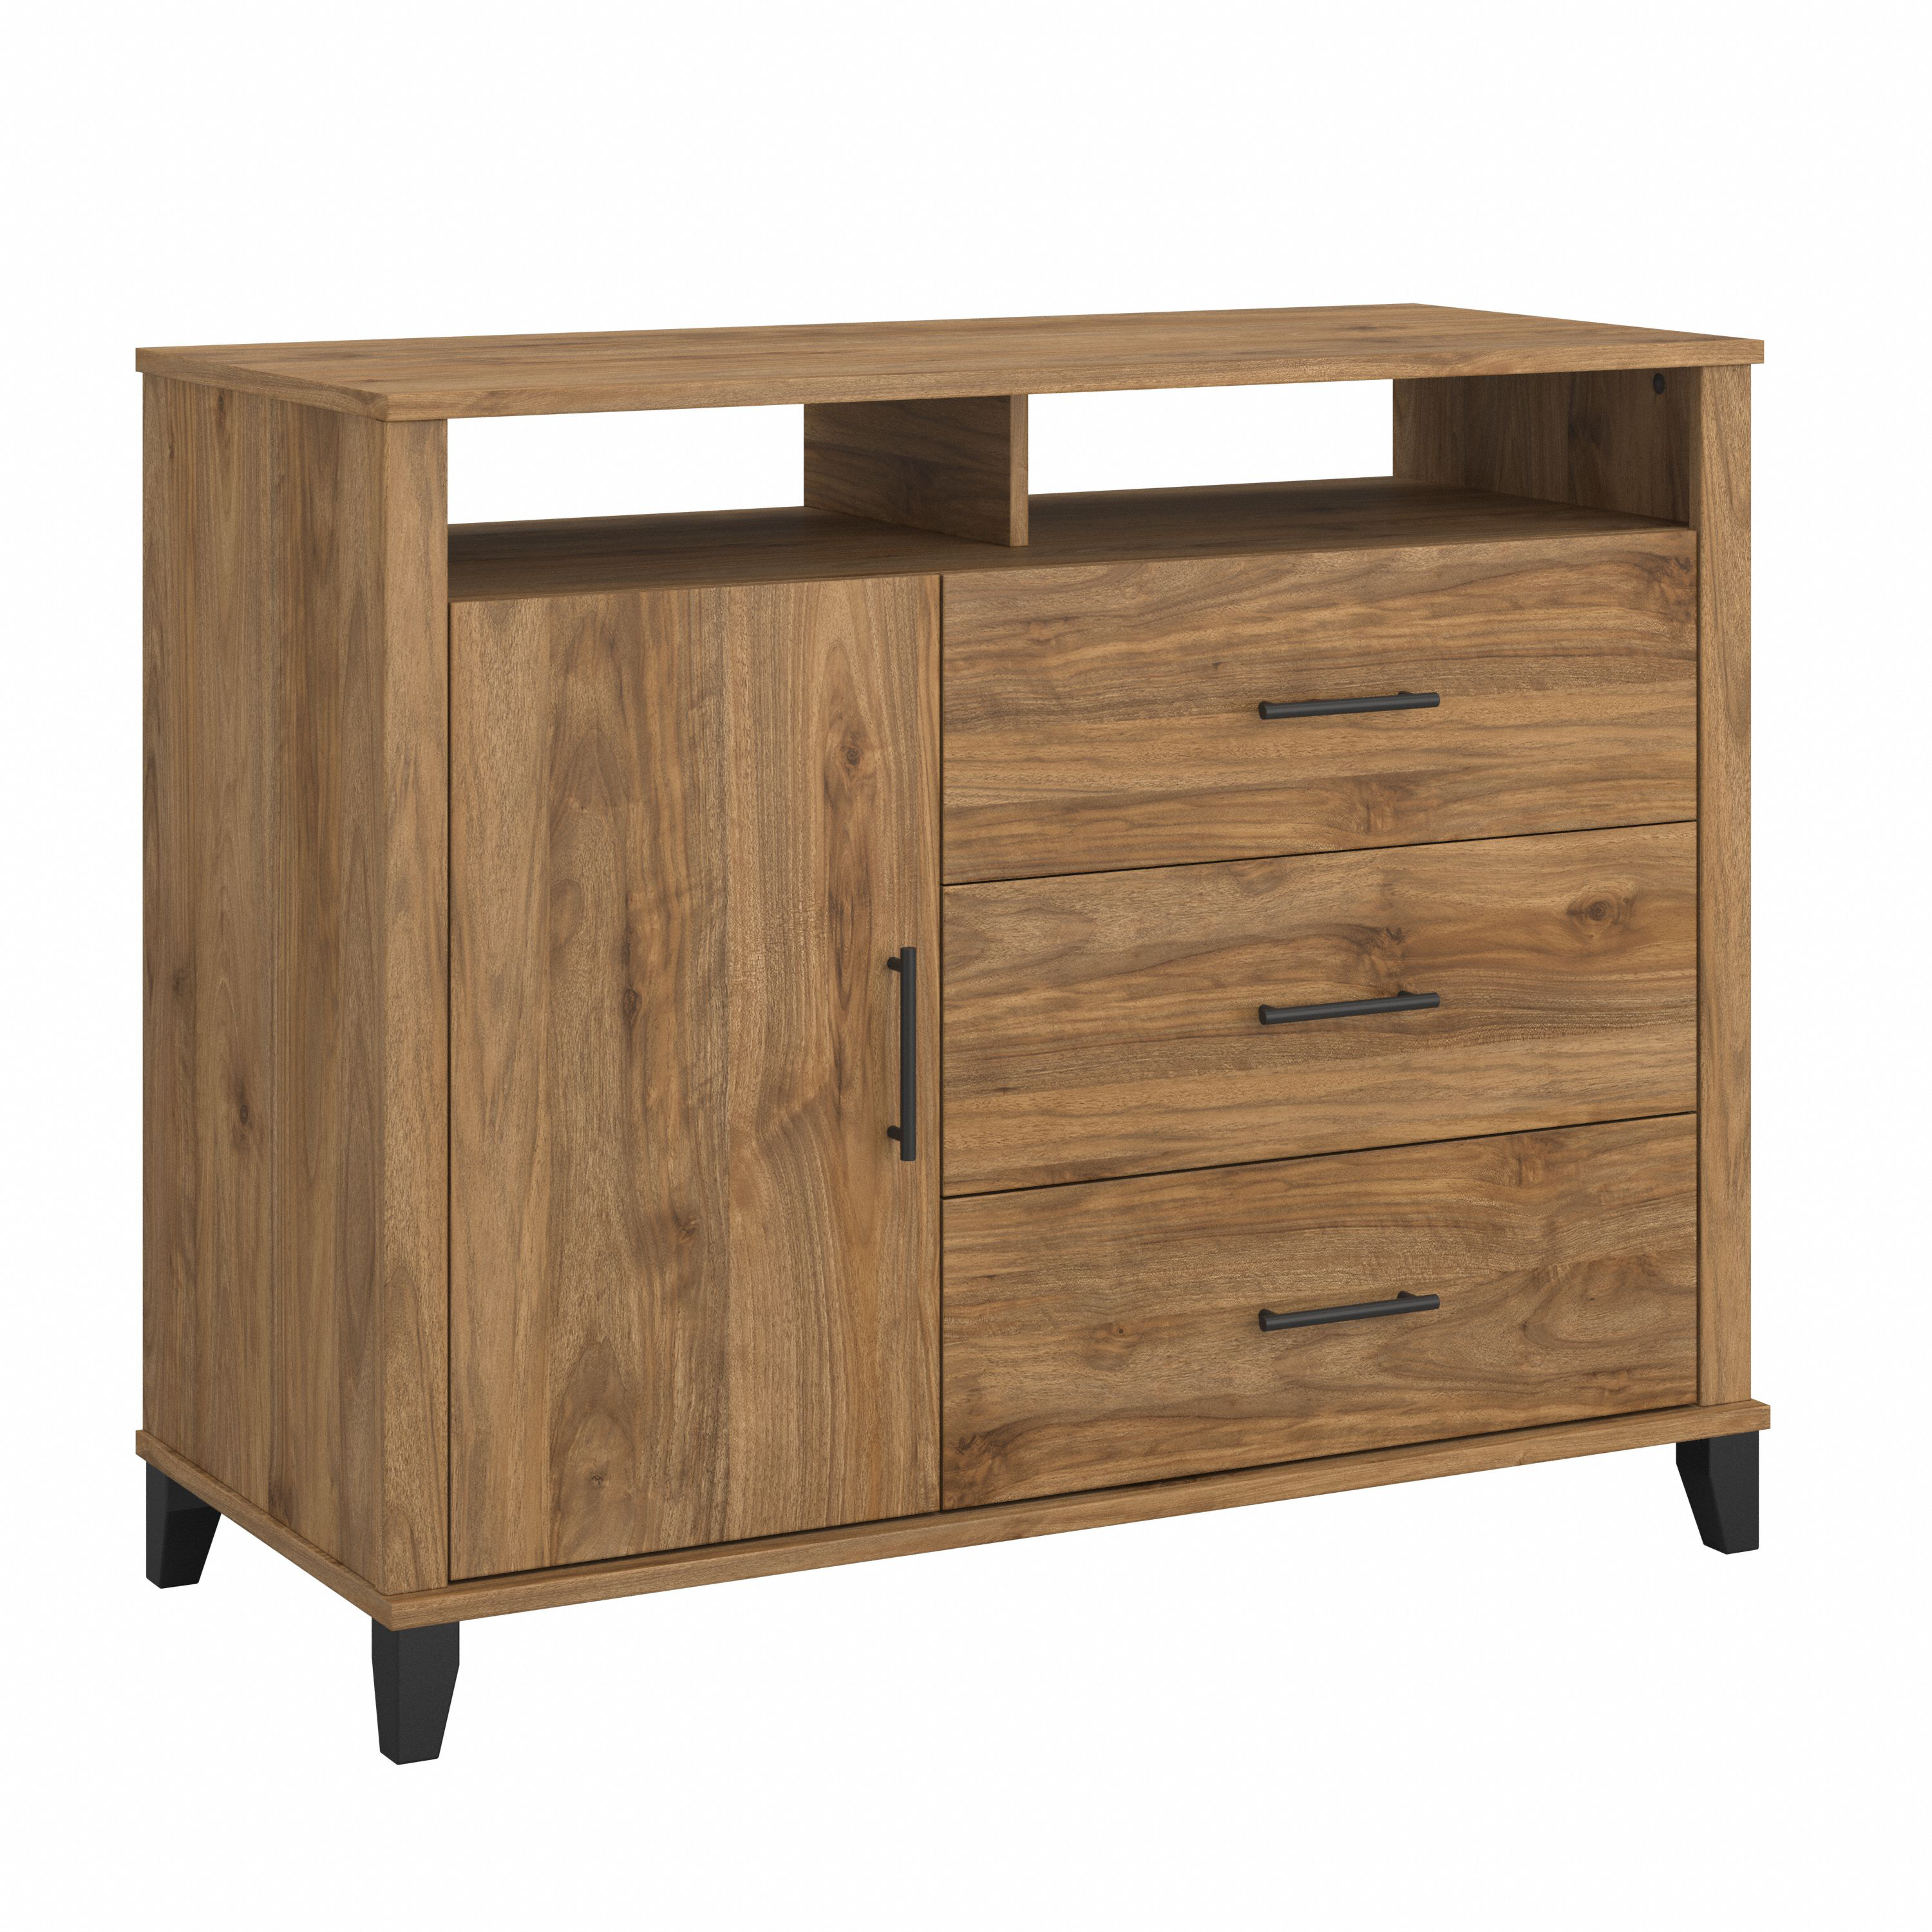 Shop Bush Furniture Somerset 3 Drawer Dresser and Bedroom TV Stand 02 STV148FWK #color_fresh walnut